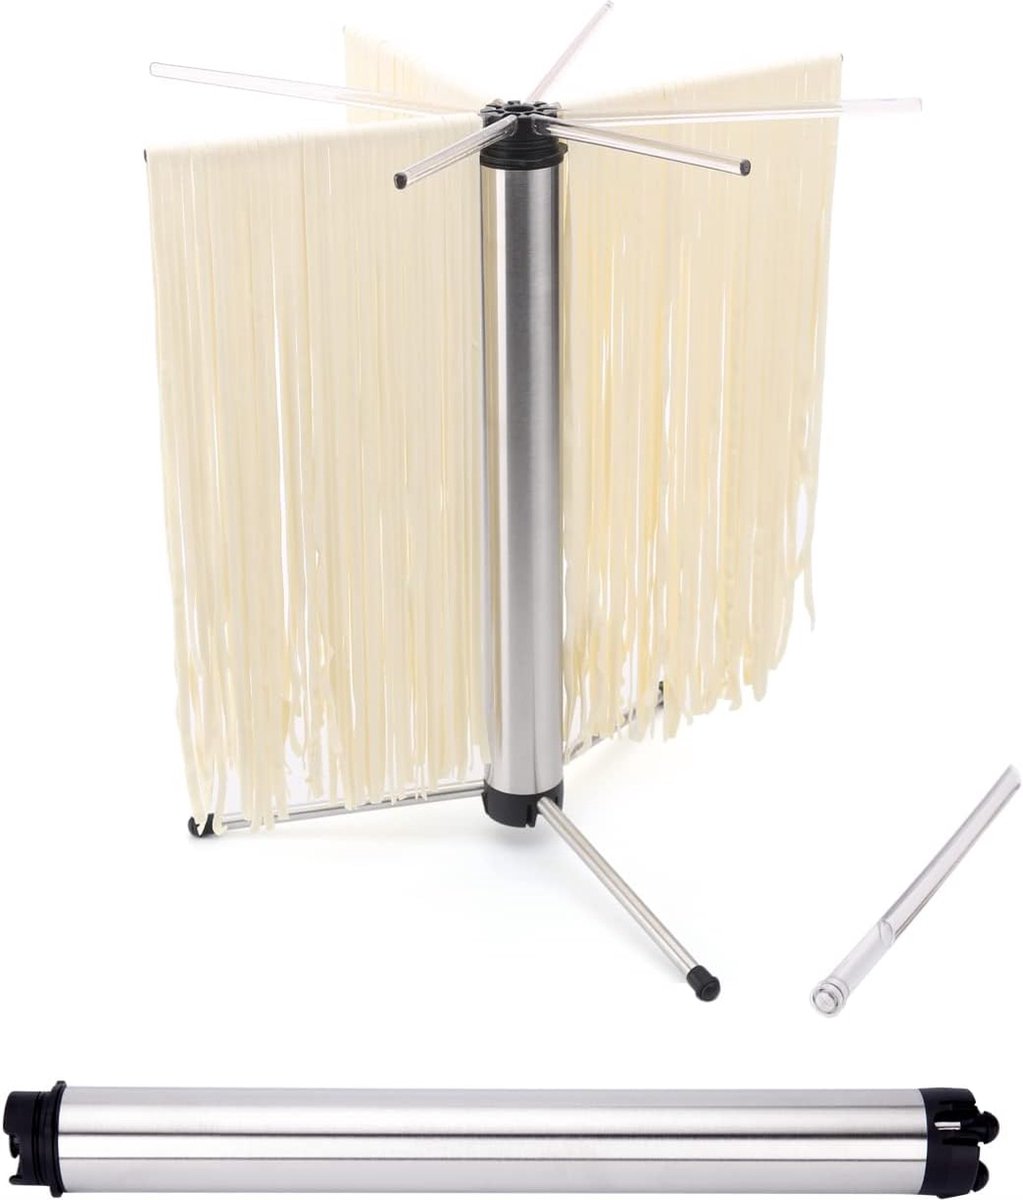 Noodle Droger voor maximaal 3 kg Pasta, Compact voor eenvoudige opslag, Snelle installatie, Roterend systeem & Gemakkelijk over te brengen, Antislipvoeten, Verwijderbaar voor eenvoudige reiniging.